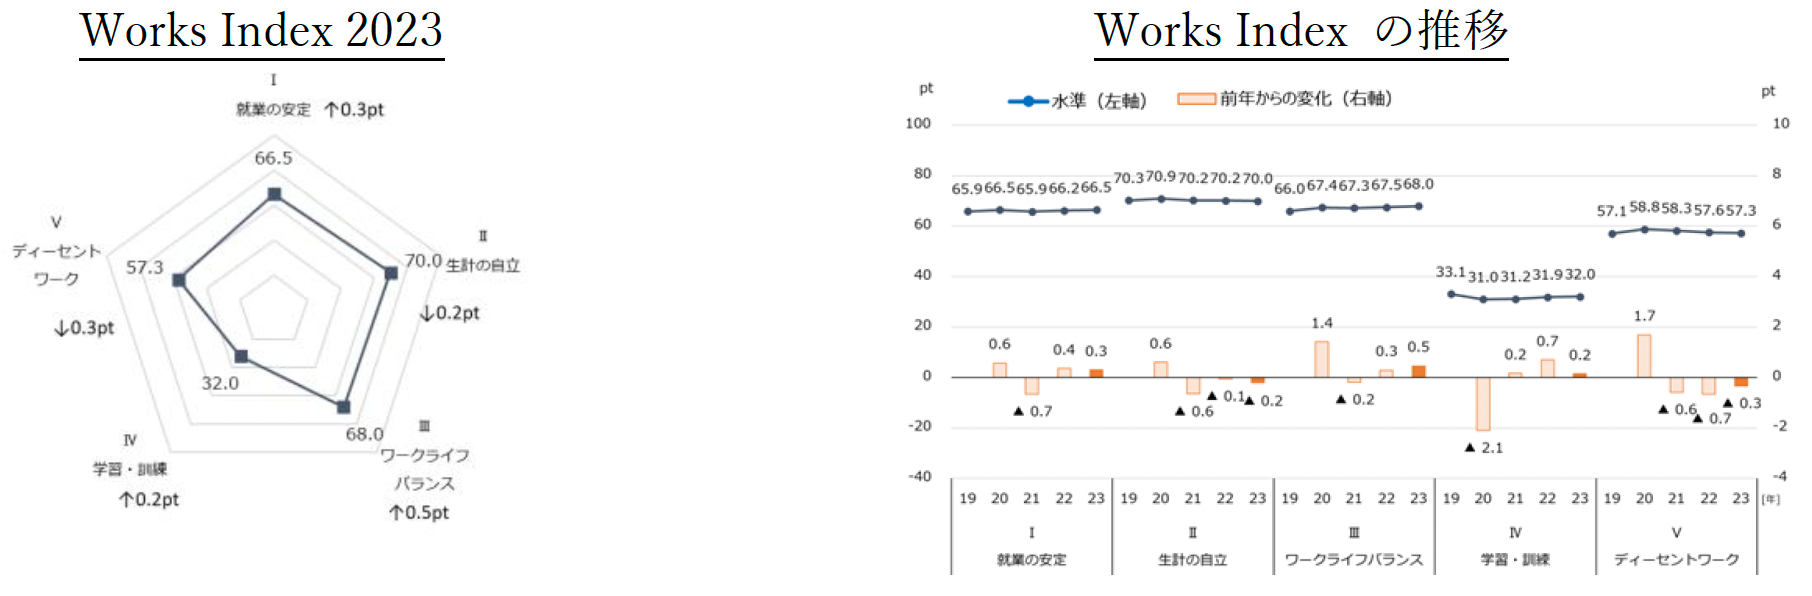 日本の働き方の指標「Works Index 2023」を発表 残業時間の縮減や休暇取得が進み、ワークライフバランスは向...